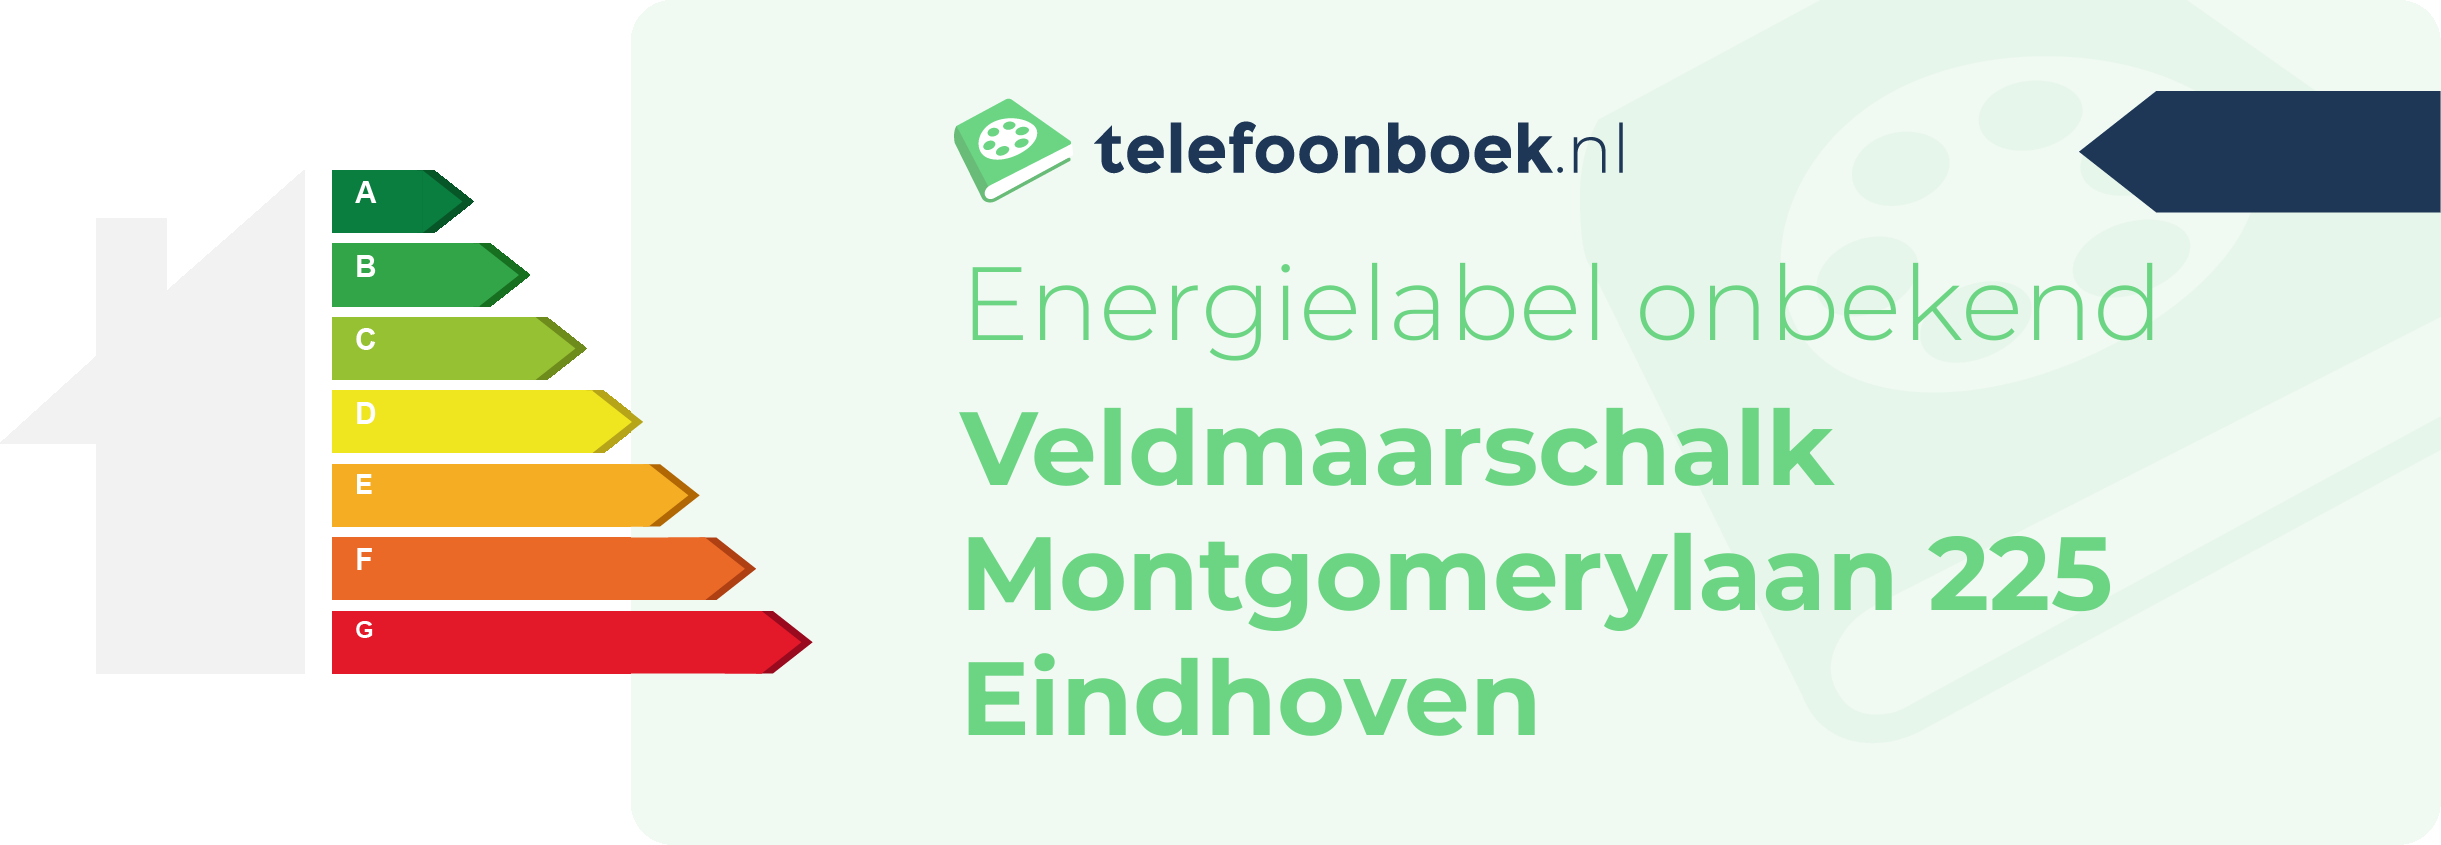 Energielabel Veldmaarschalk Montgomerylaan 225 Eindhoven